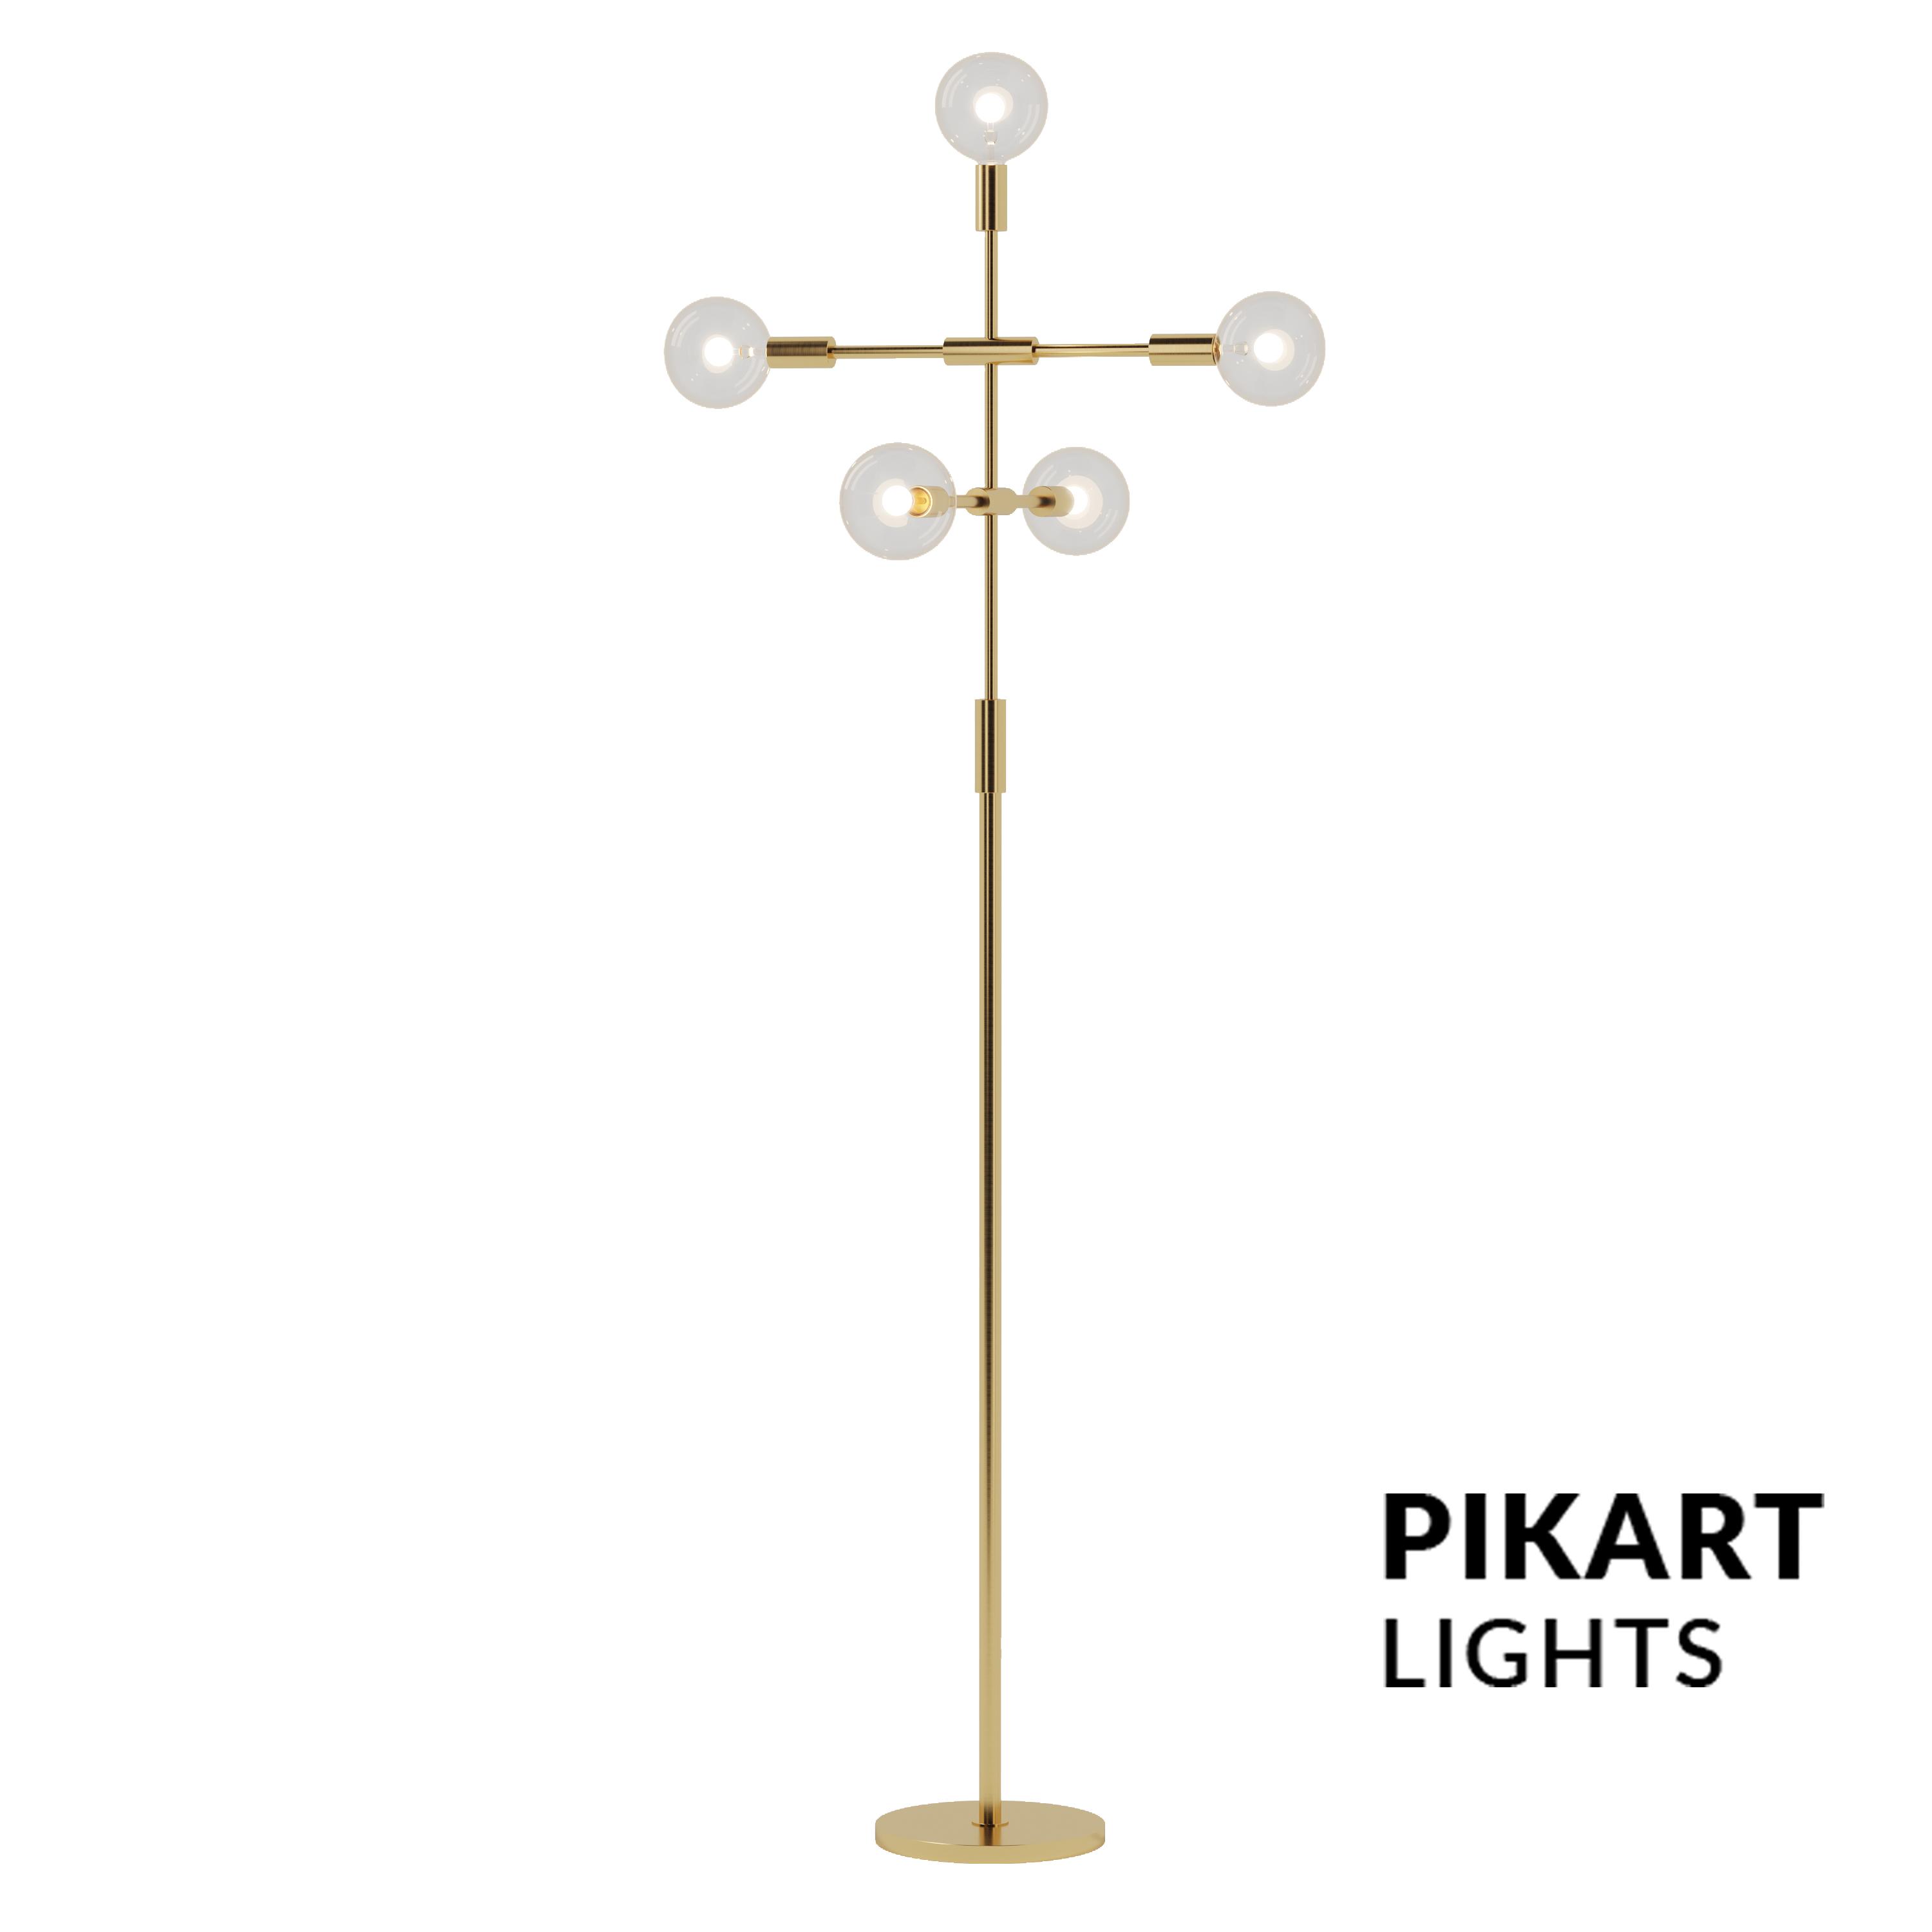 Mals floor lamp, SKU. 5089 by Pikartlights 3d model